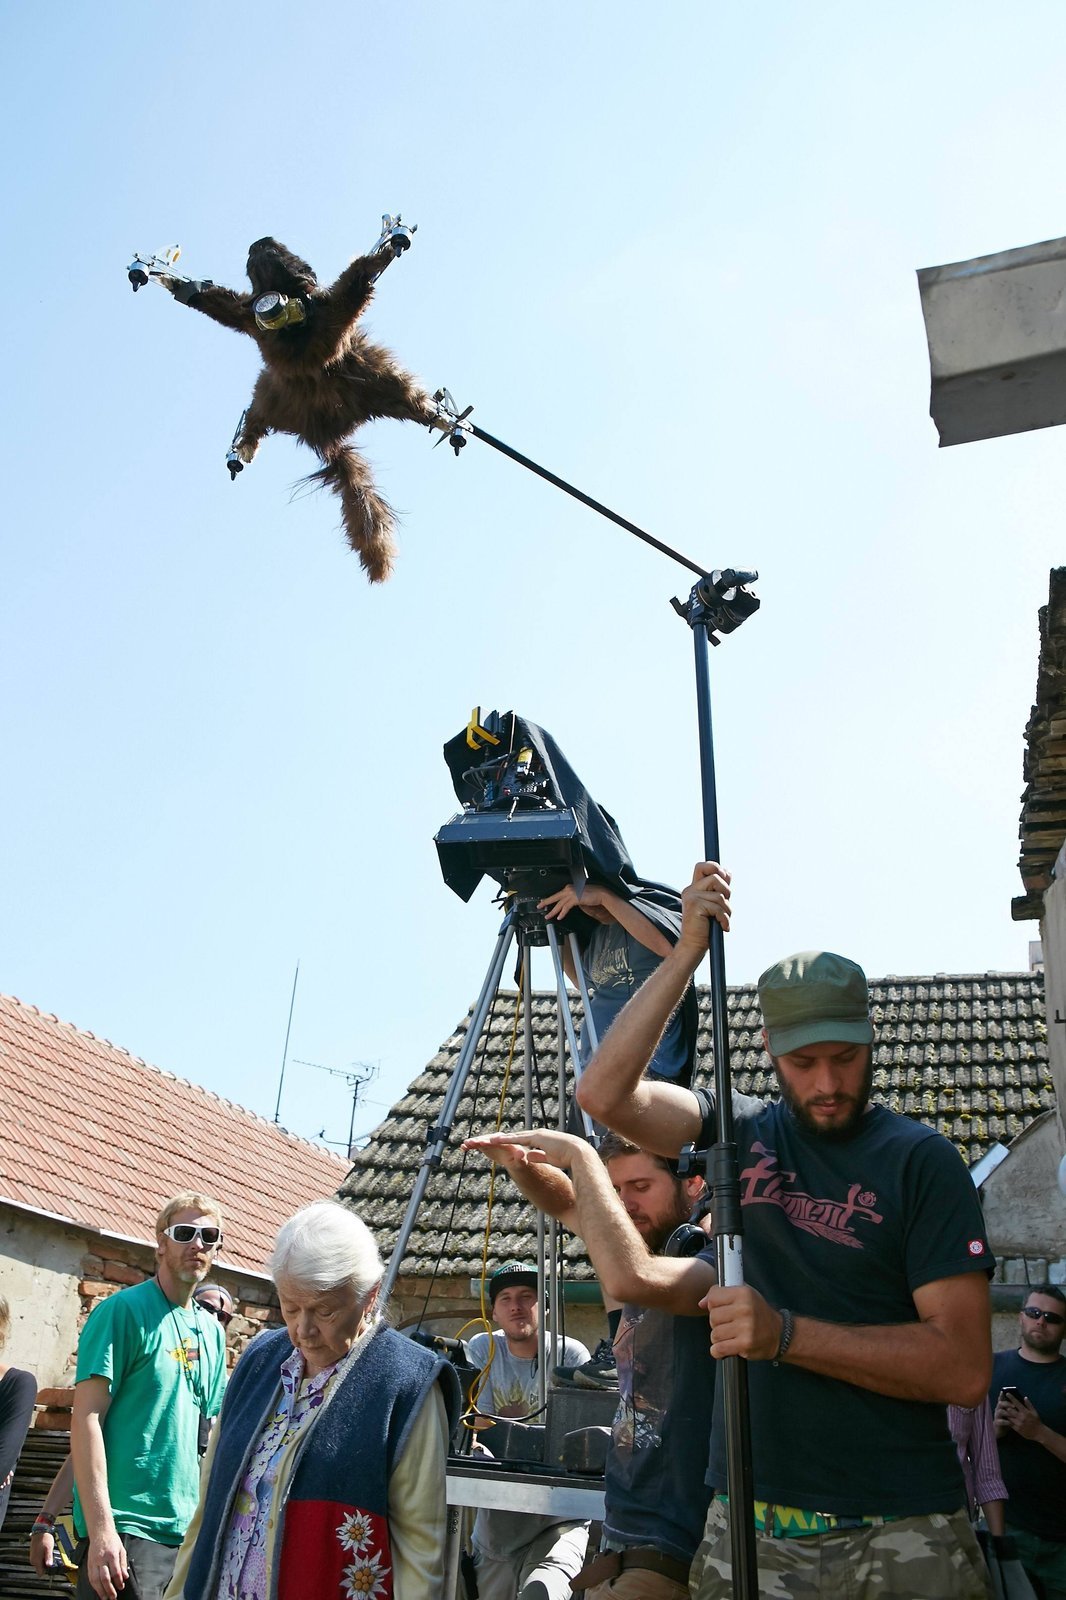 Při natáčení mimo vinohrad se musel dron připevnit na tyč.